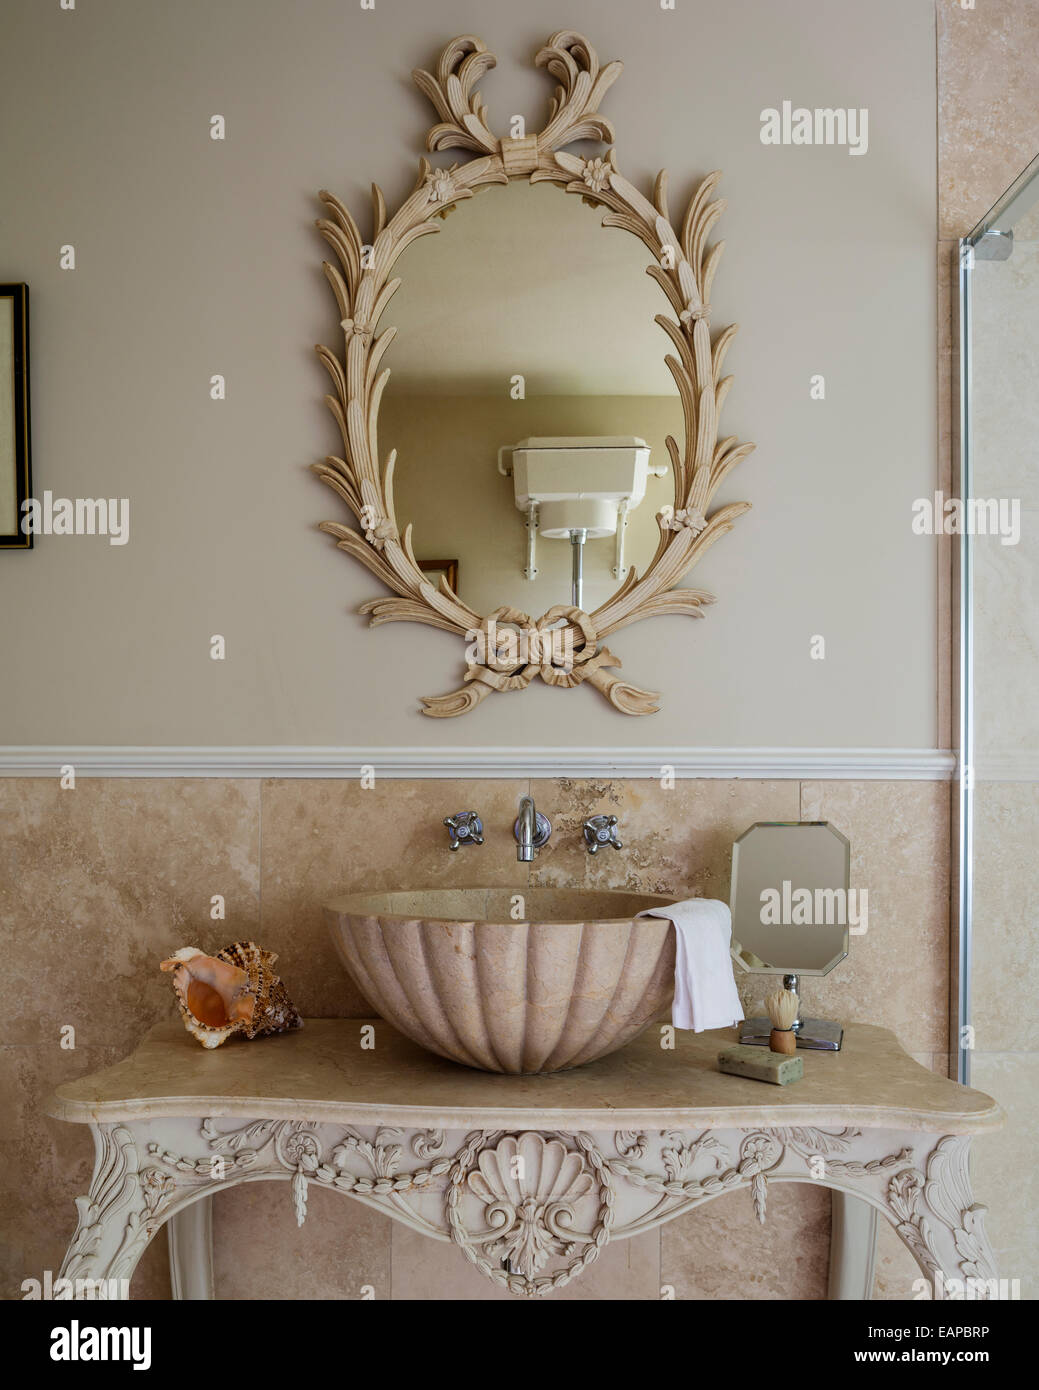 Un scolpito a mano su misura di Grand-tour shell design lavabo su riccamente intagliato nella tabella. Foto Stock